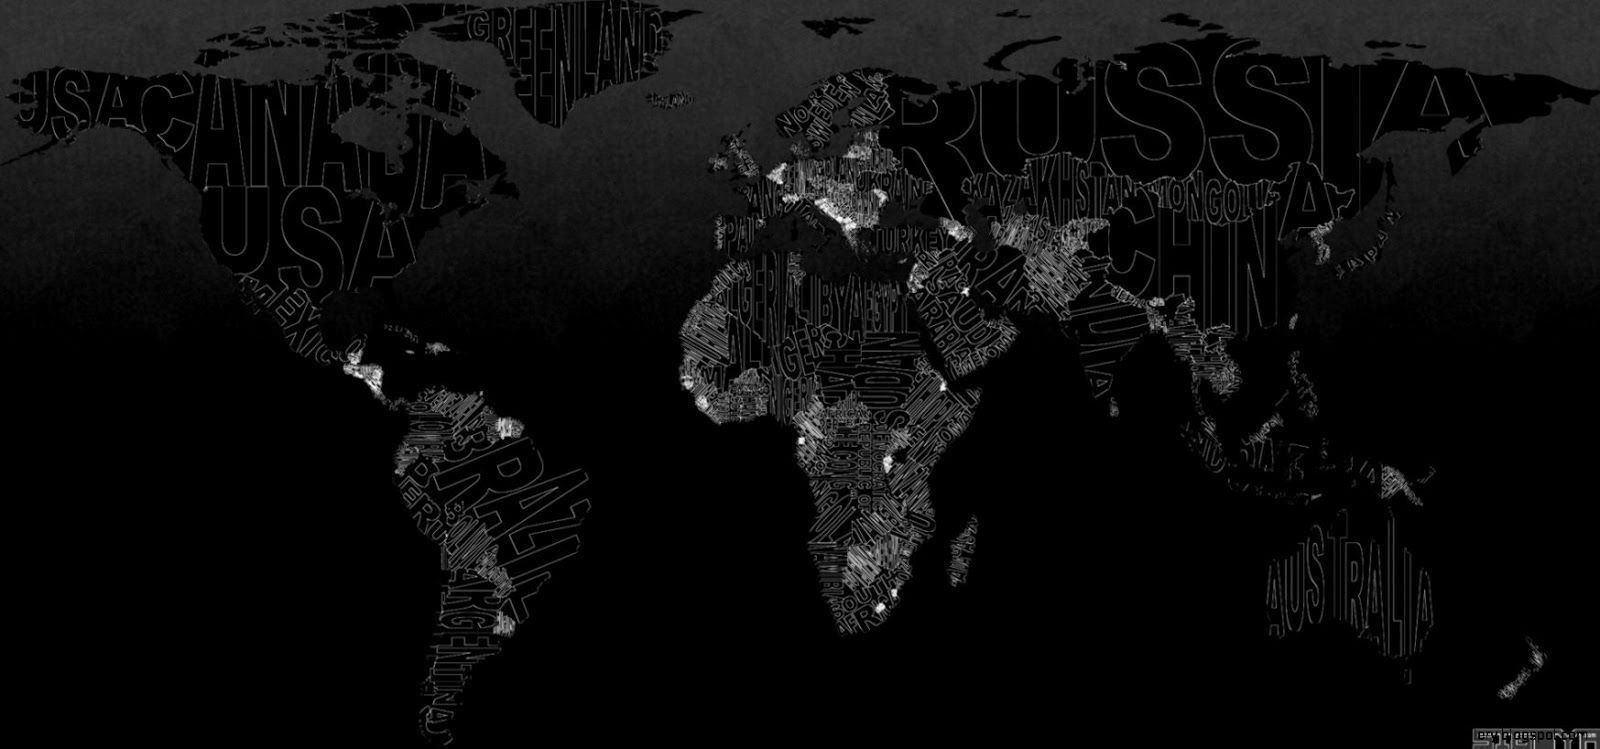 World Map Desktop Wallpaper